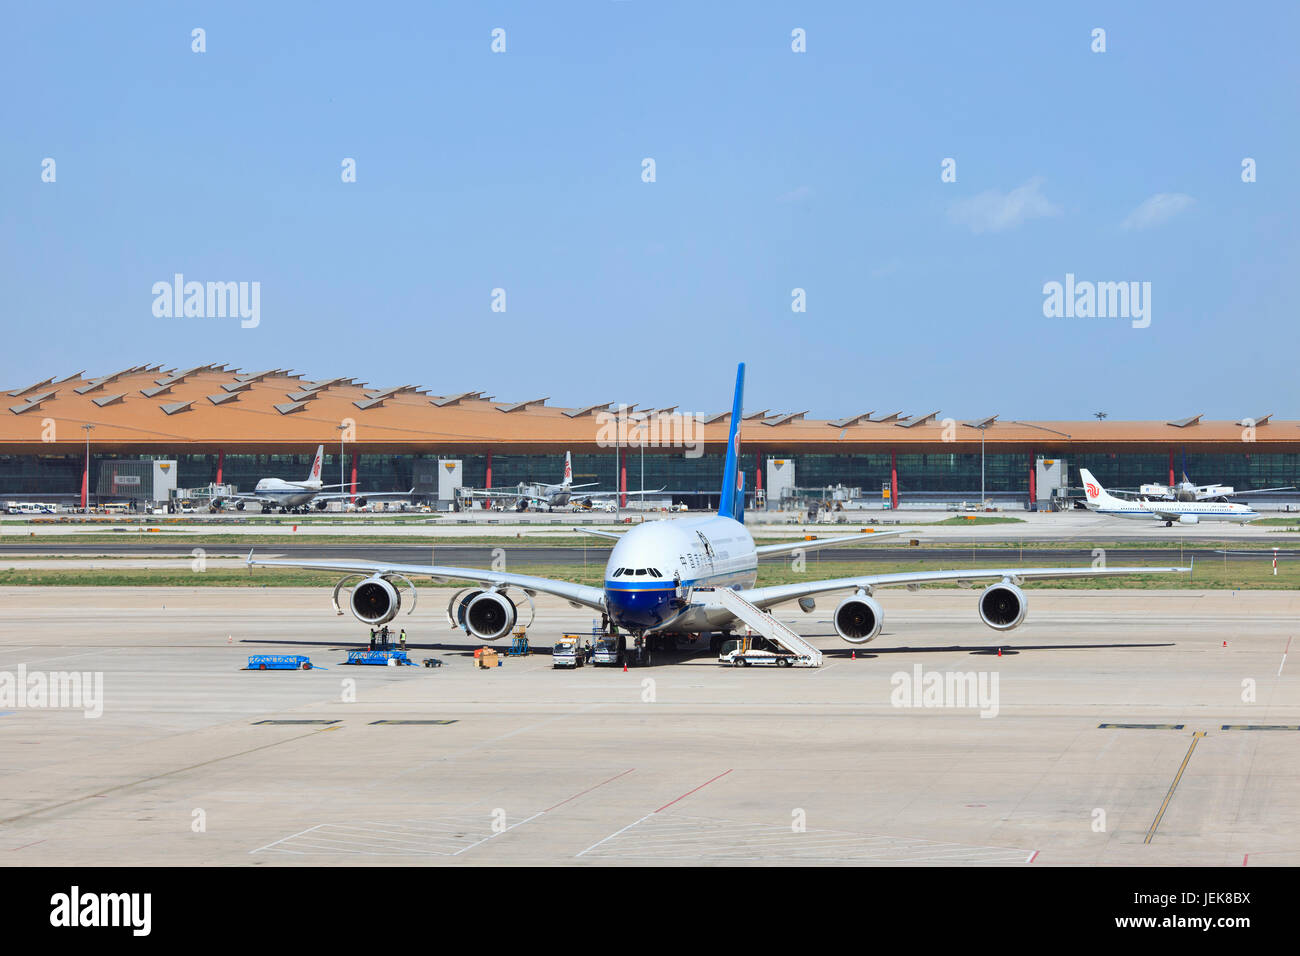 PÉKIN-MAI 11. Airbus A 380-861 sur l'aéroport de Capital. Un avion-jet à double pont, à corps large et quatre moteurs. Le plus grand avion de passagers au monde. Banque D'Images